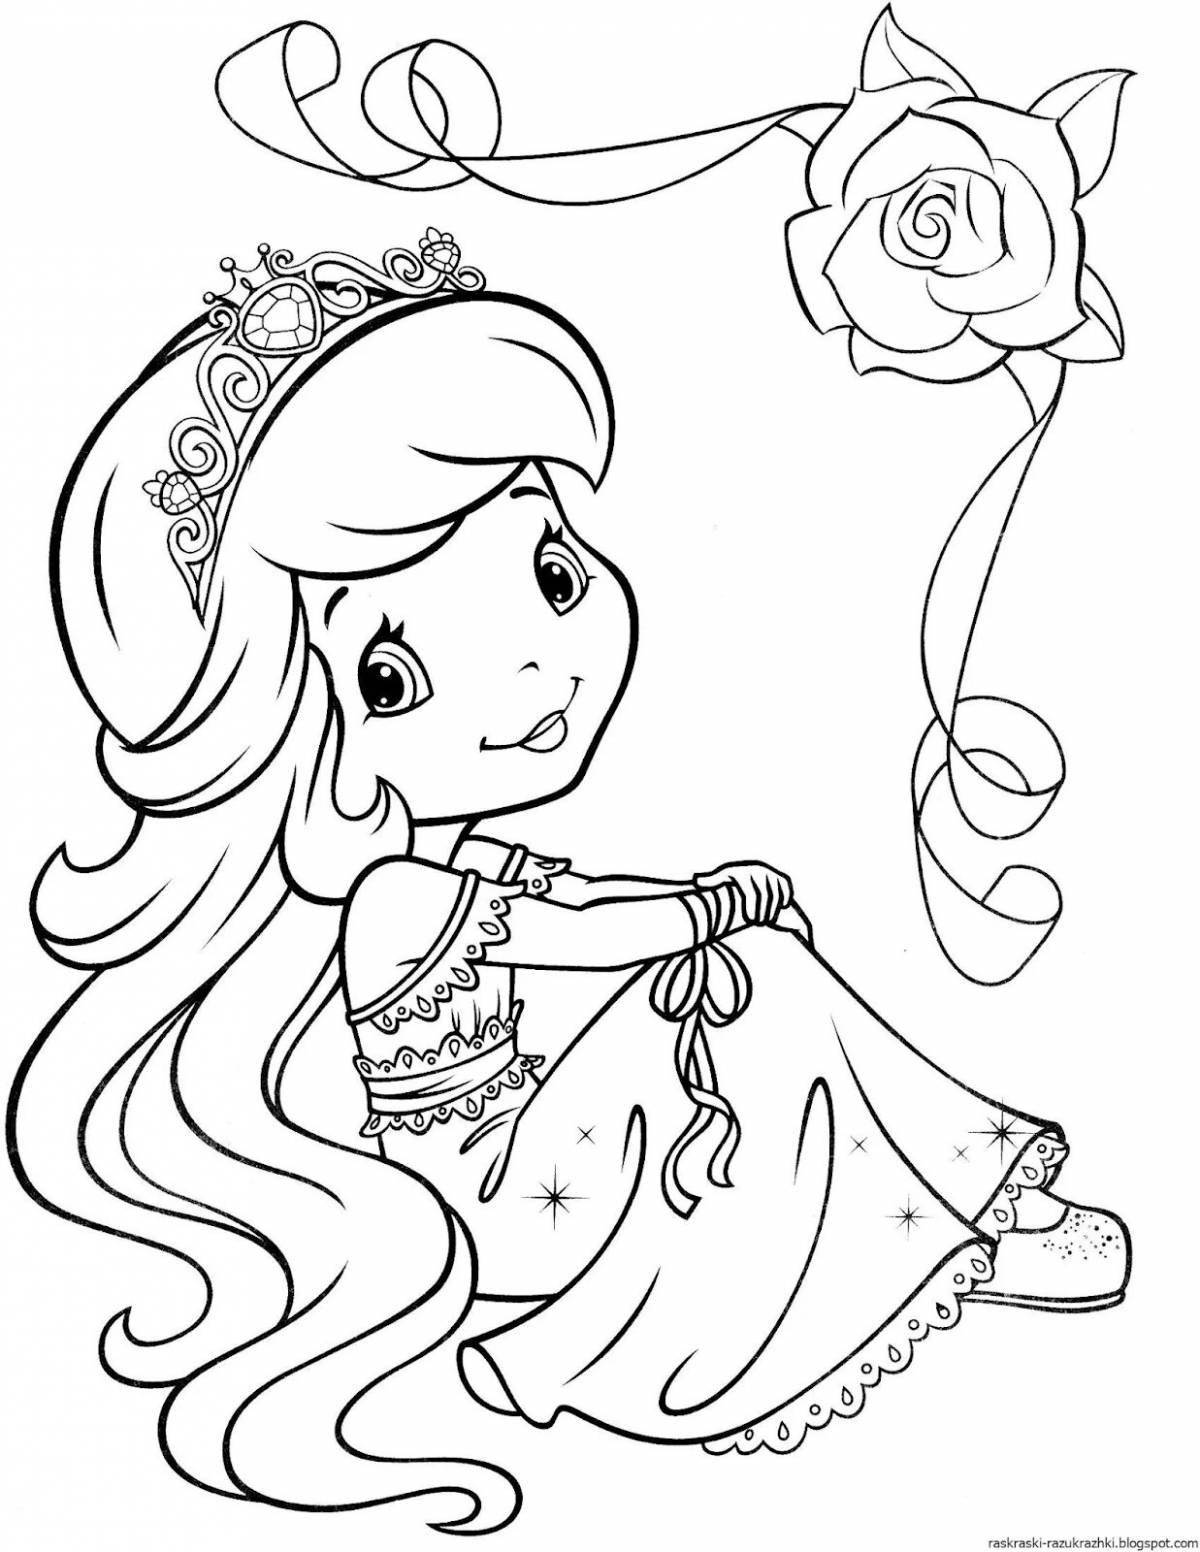 Раскраска Учитель Рубан К.Ю. Волшебные принцессы: для детей 5-8 лет